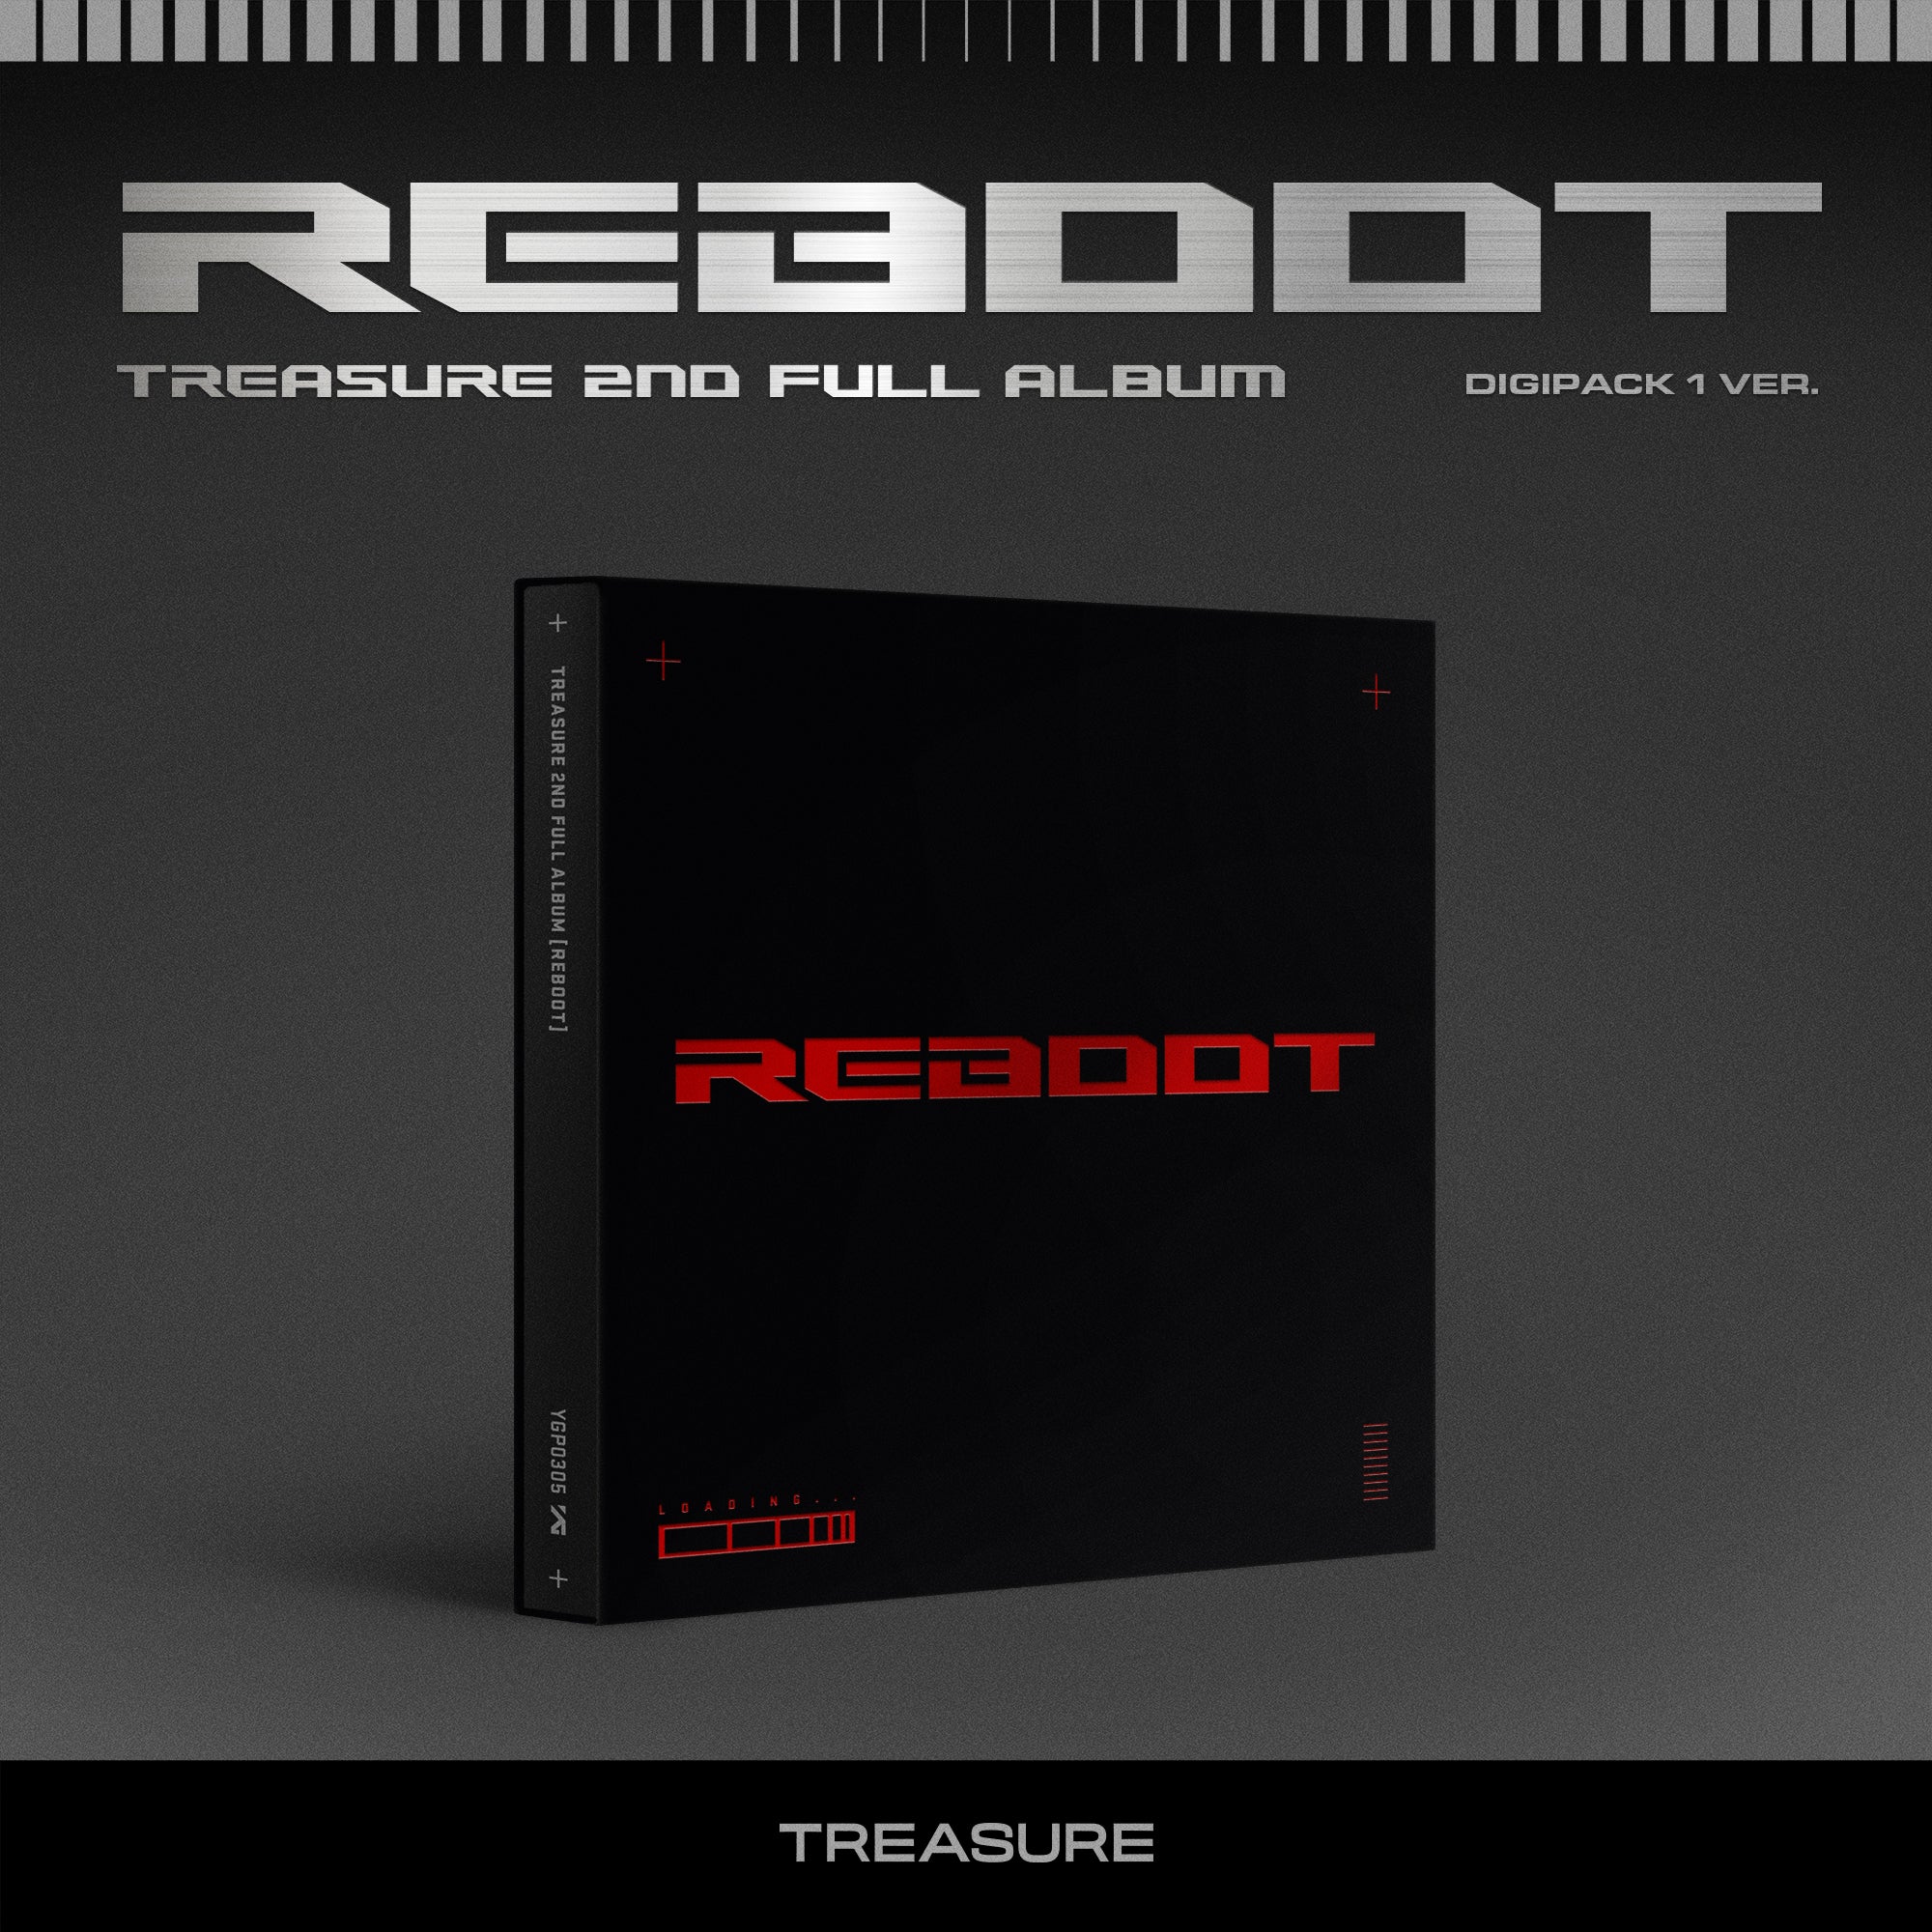 TREASURE 2ND FULL ALBUM 'REBOOT' (DIGIPACK) COVER